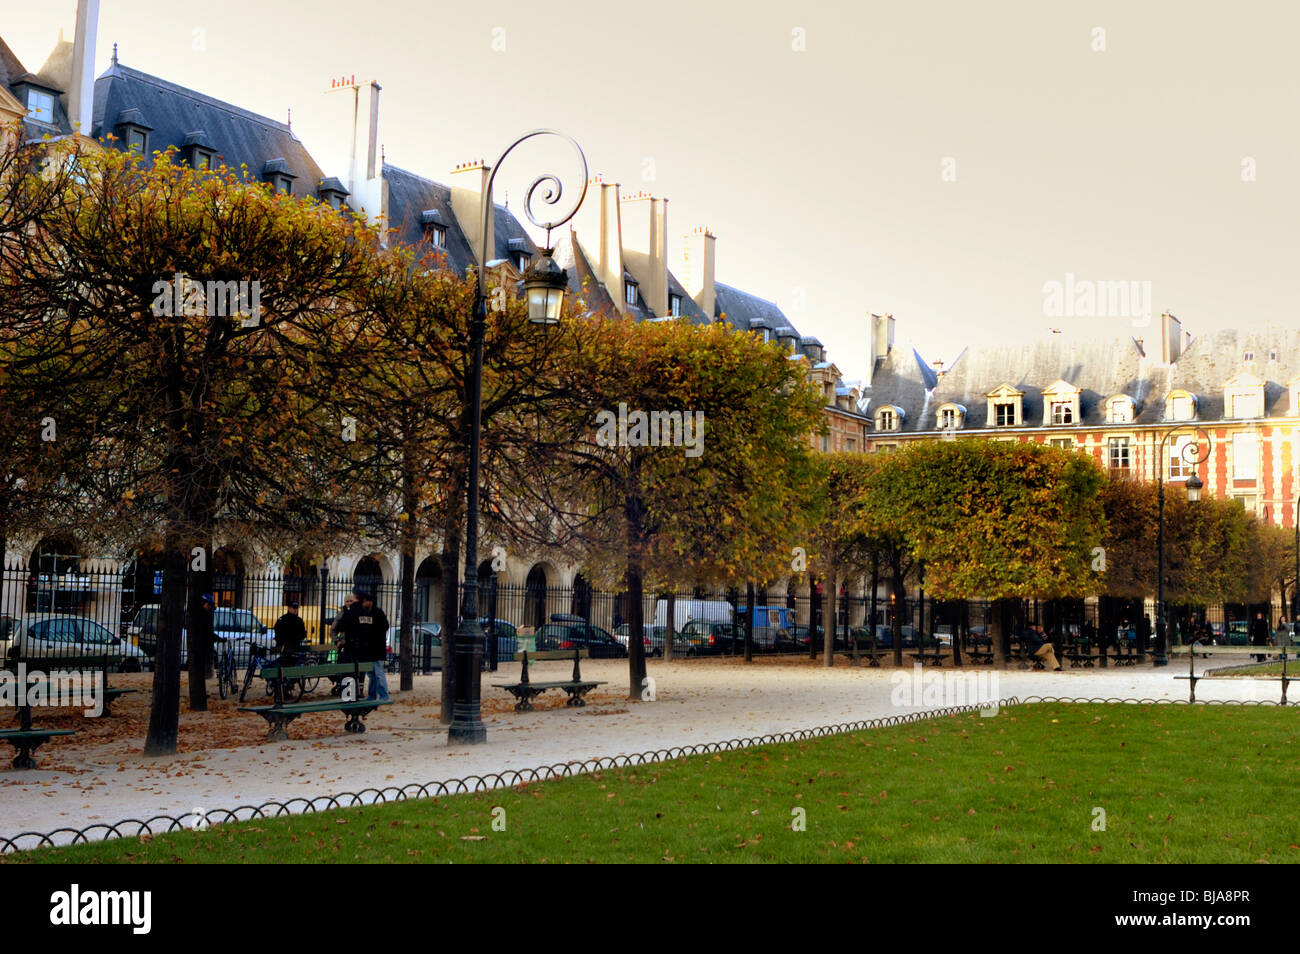 Paris, France - Les gens de l'extérieur en parc urbain, "Place des Vosges", scène, Le Marais, la place de l'automne Banque D'Images